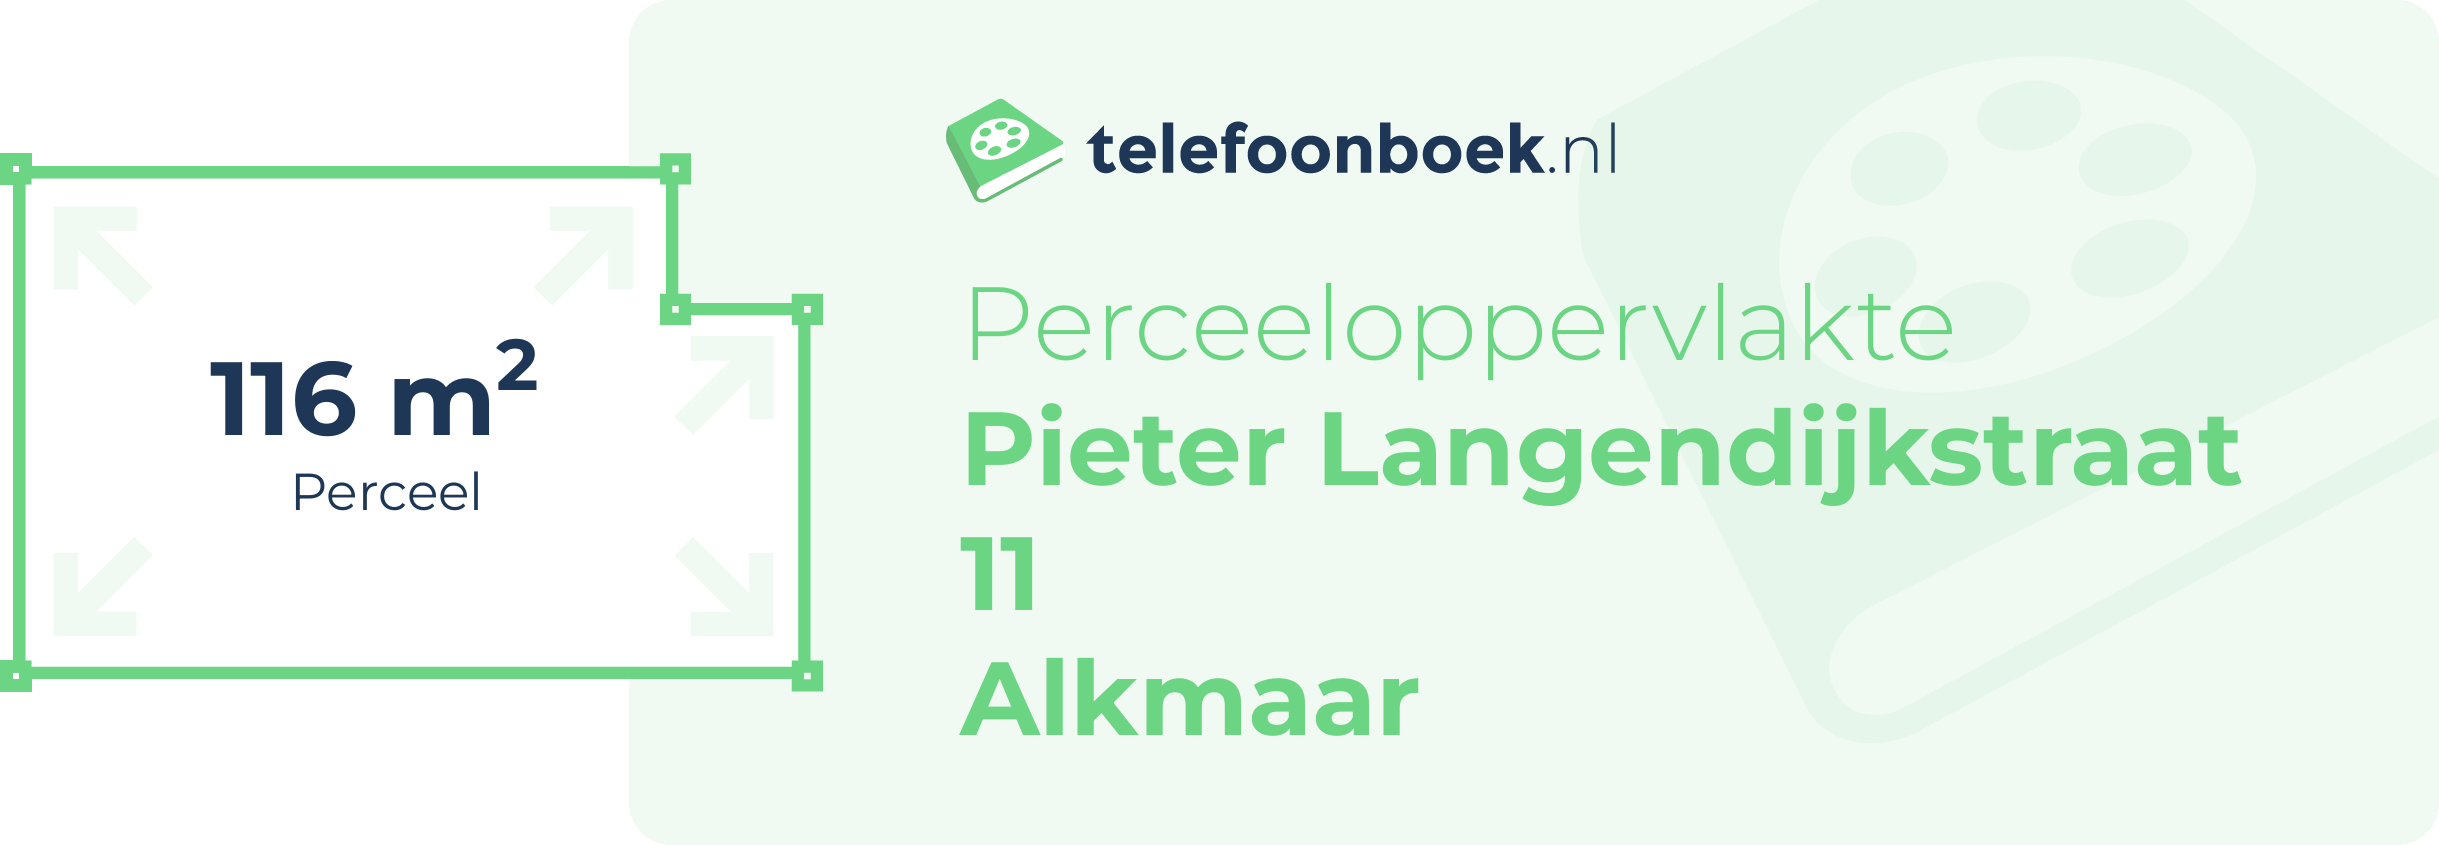 Perceeloppervlakte Pieter Langendijkstraat 11 Alkmaar